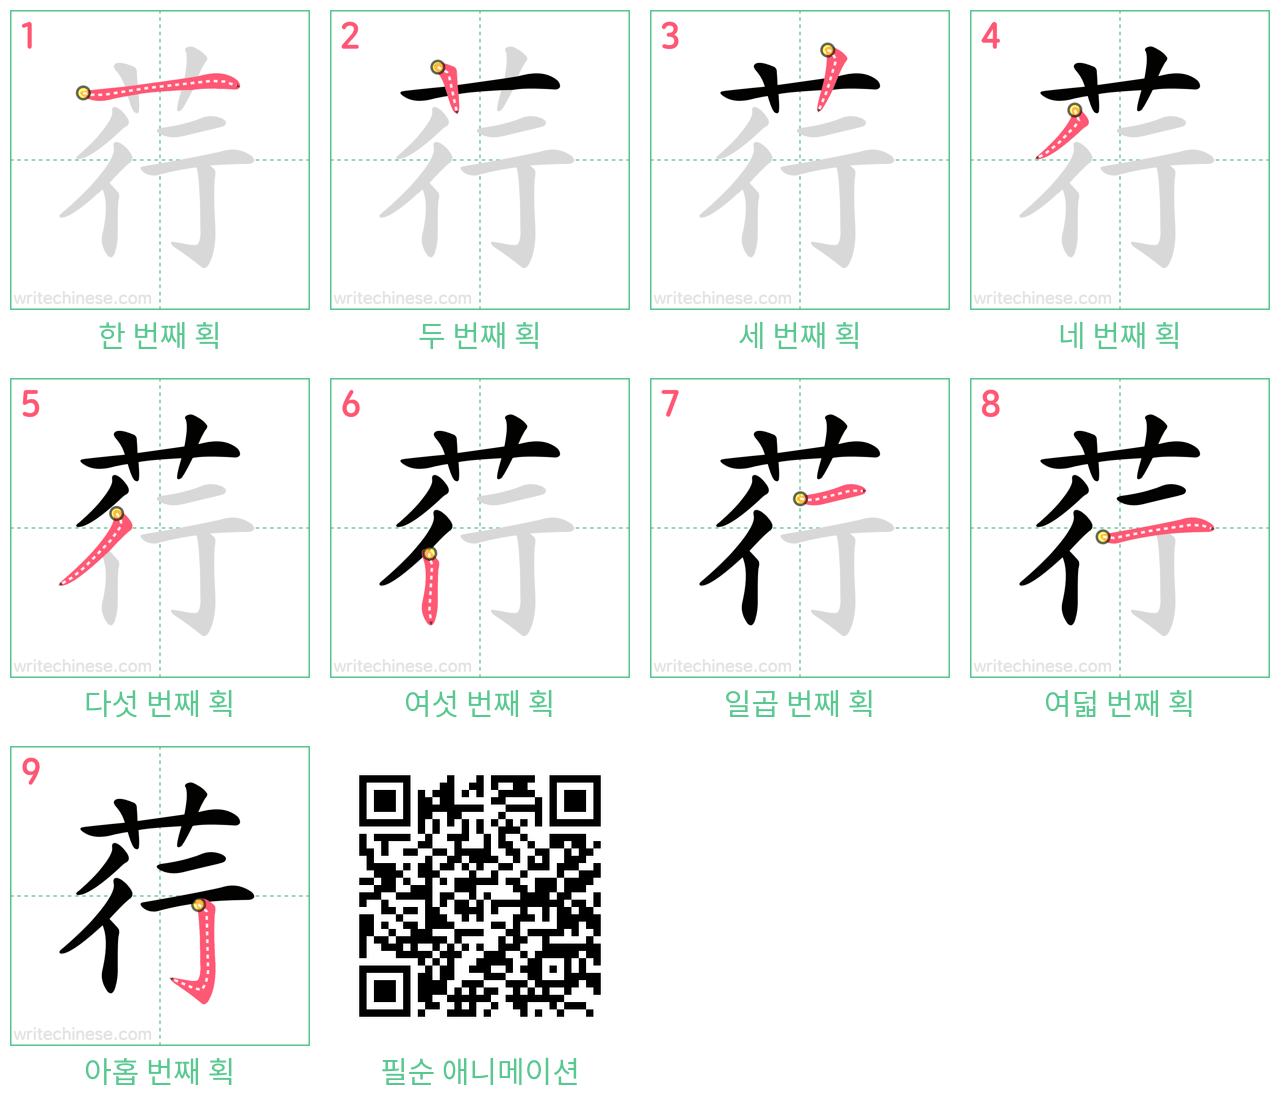 荇 step-by-step stroke order diagrams